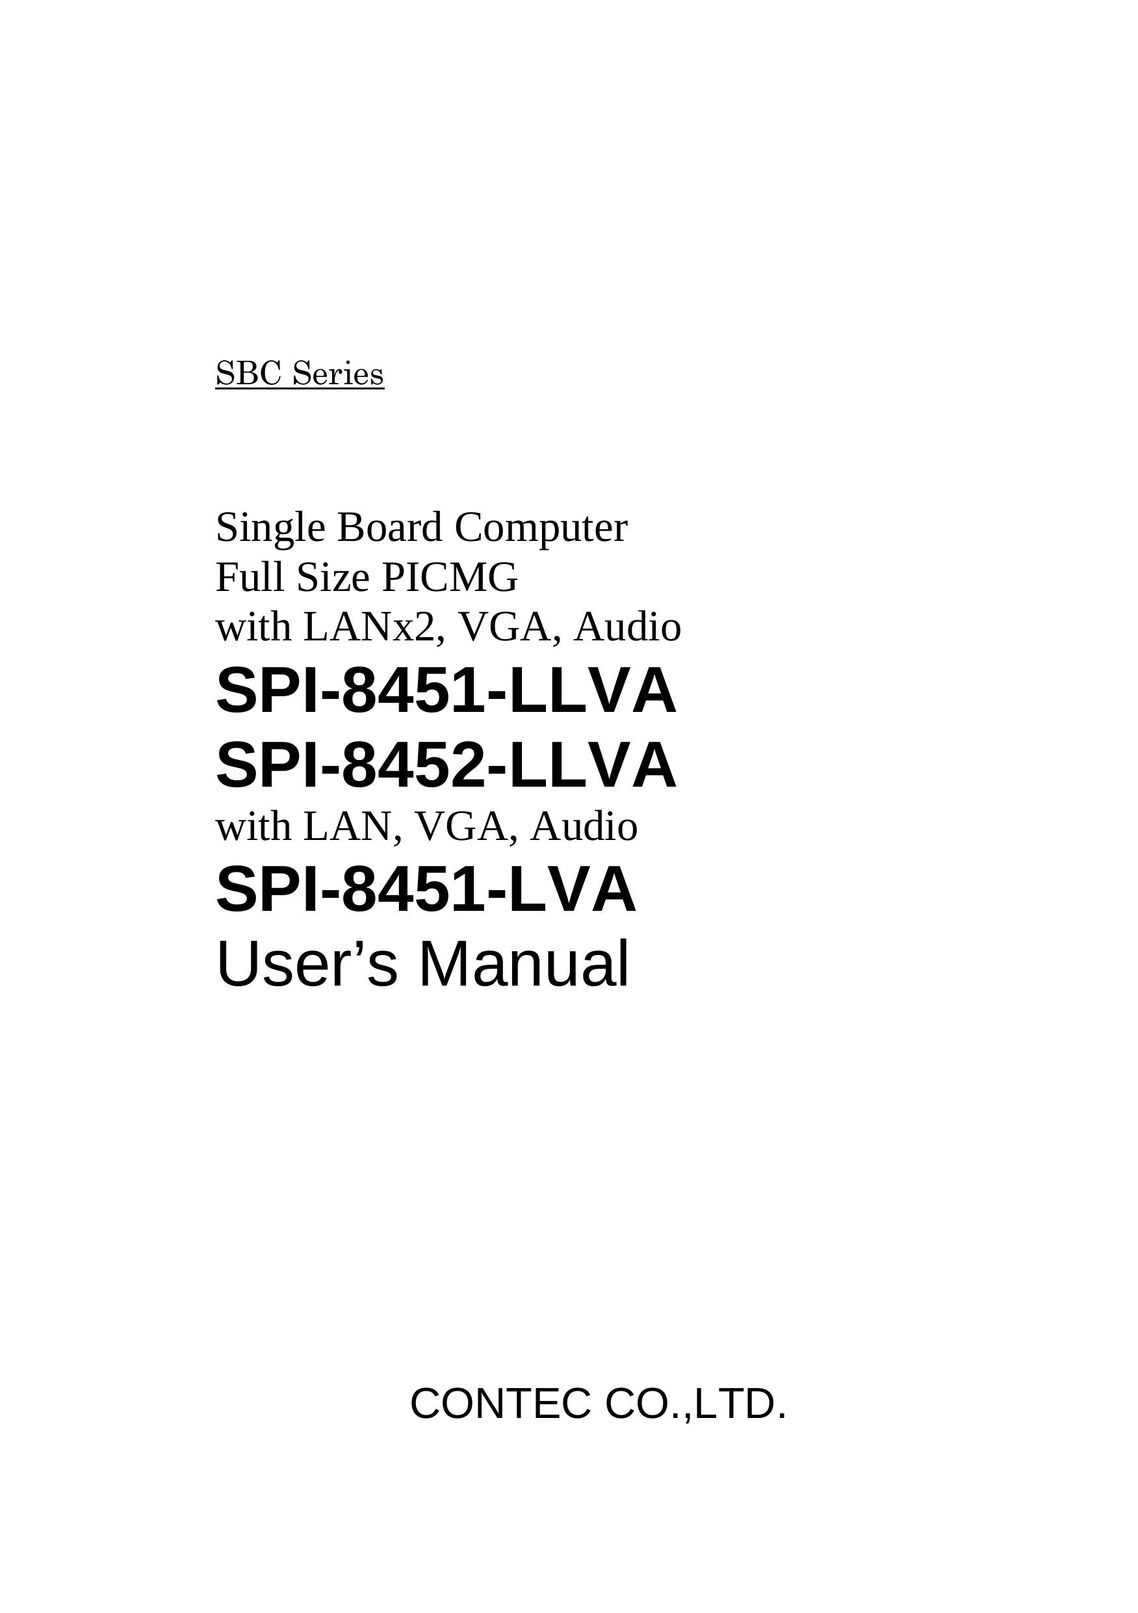 Contec SPI-8451-LLVA Computer Hardware User Manual